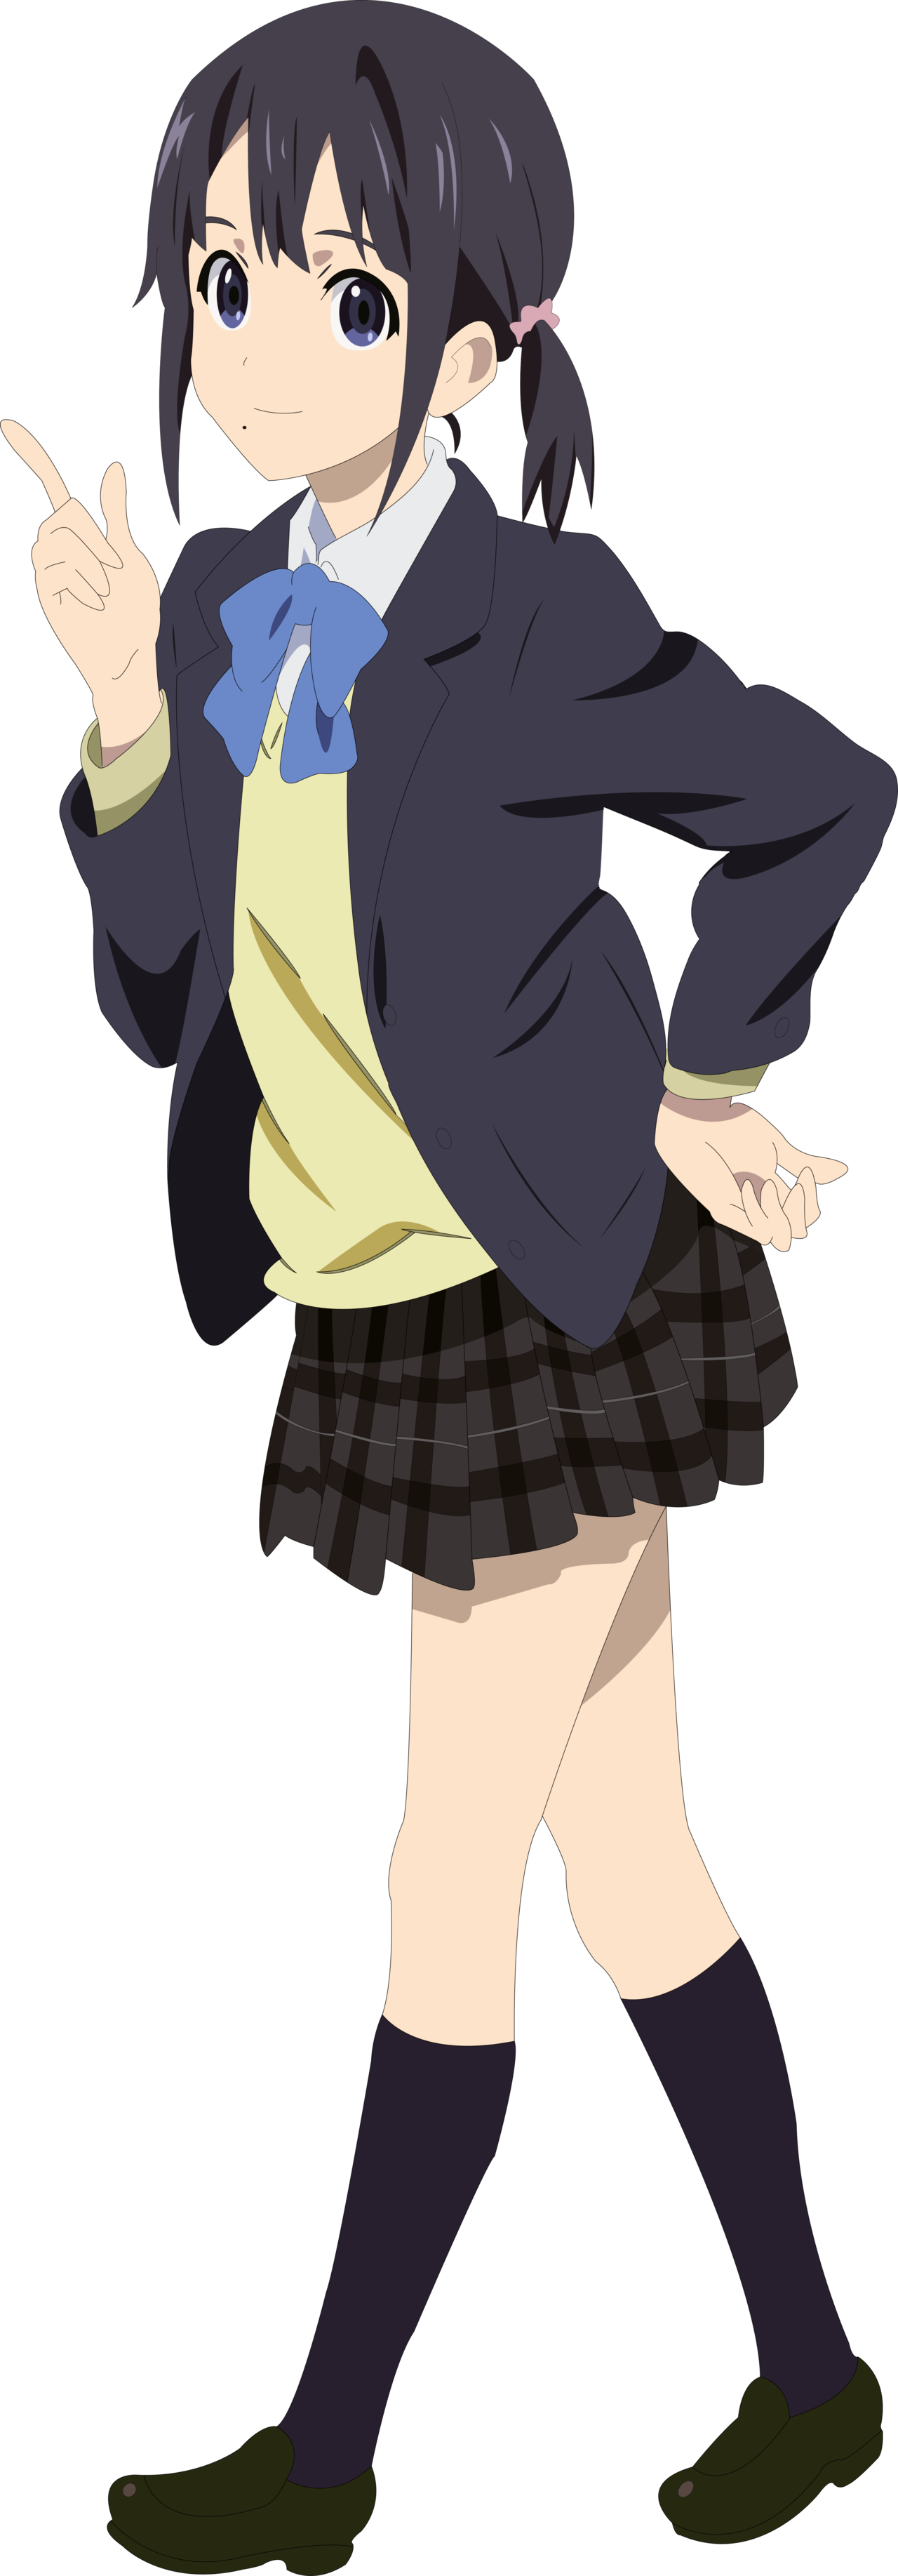 Anime Girls - Anime Full Body Transparent (1280x3670)